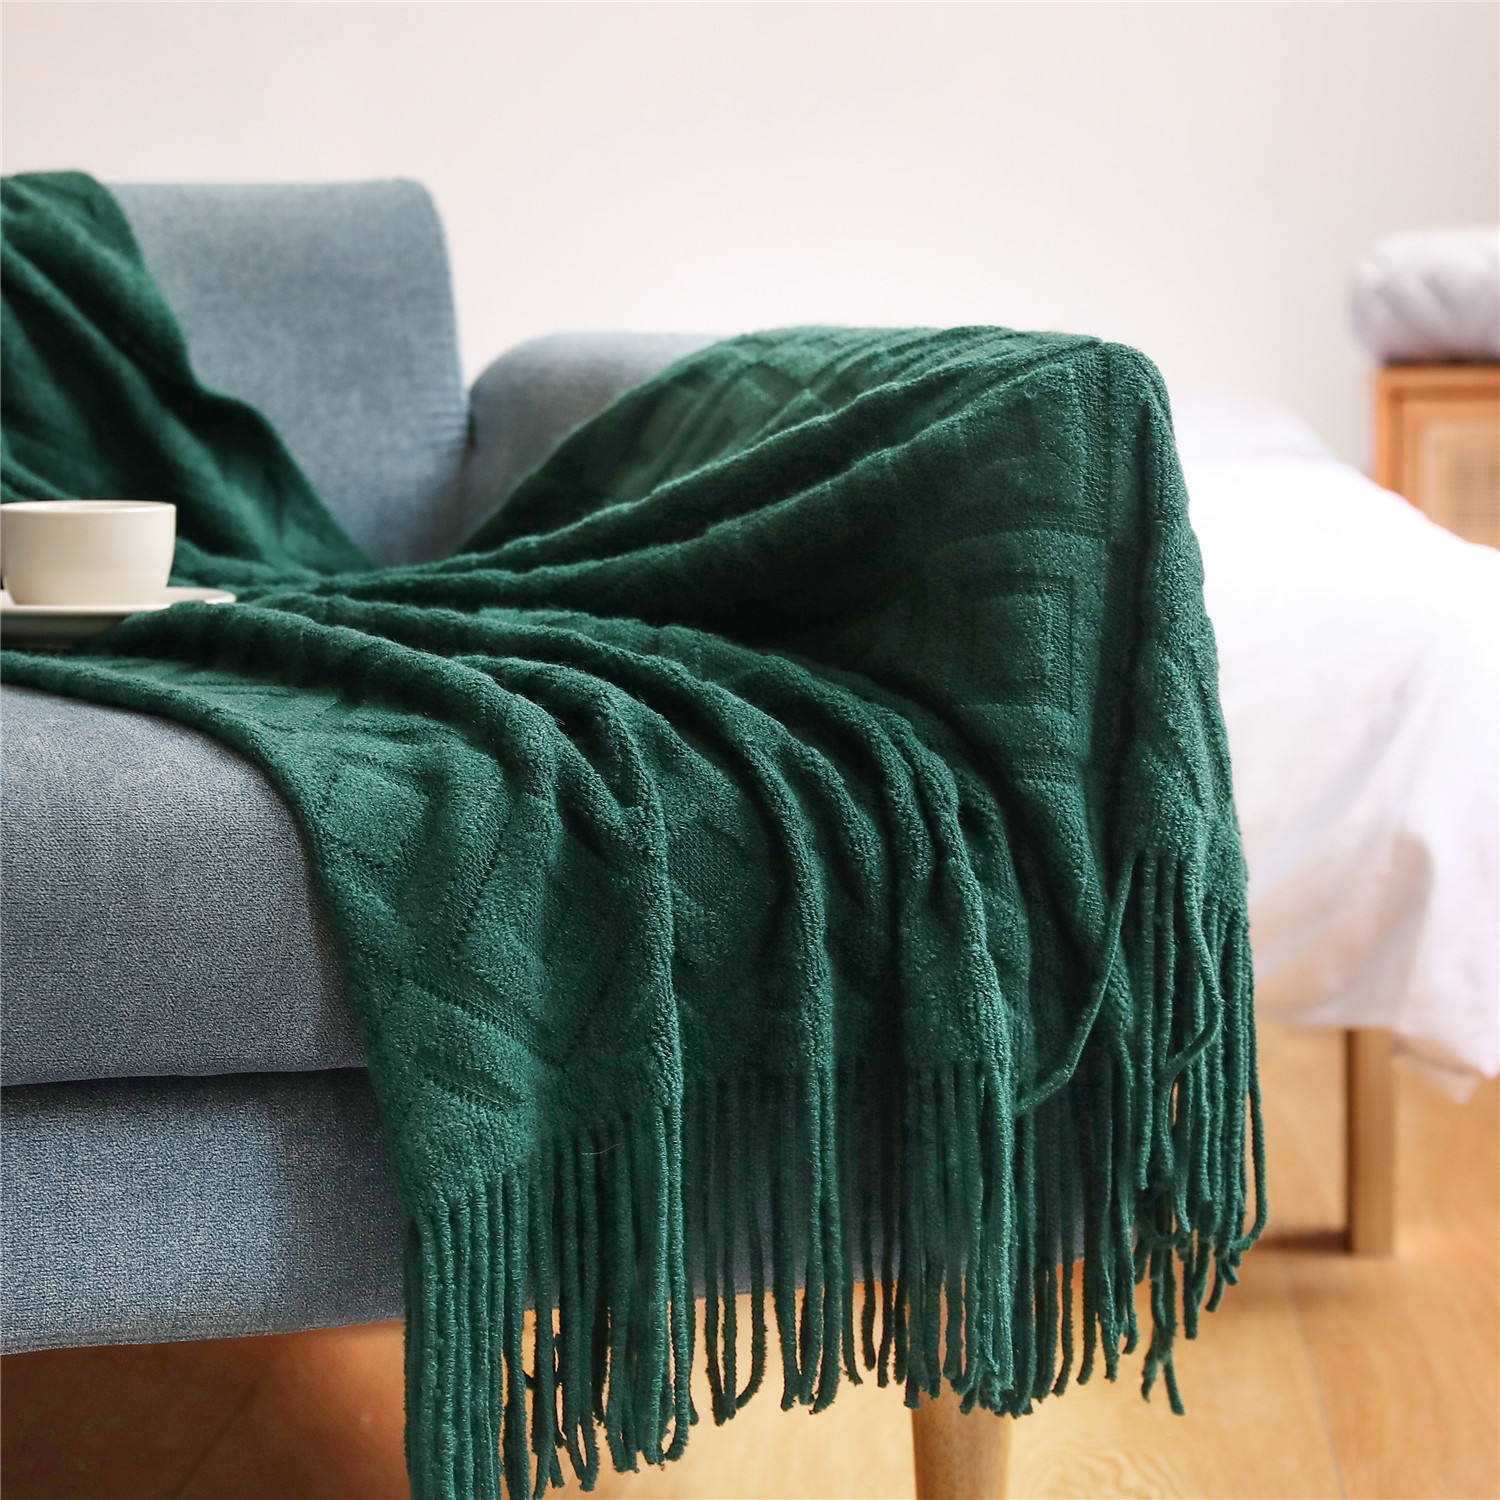 大披肩沙发毯盖毯毛毯 针织毯办公室午睡毯提花小毯子定制美式搭毯线毯